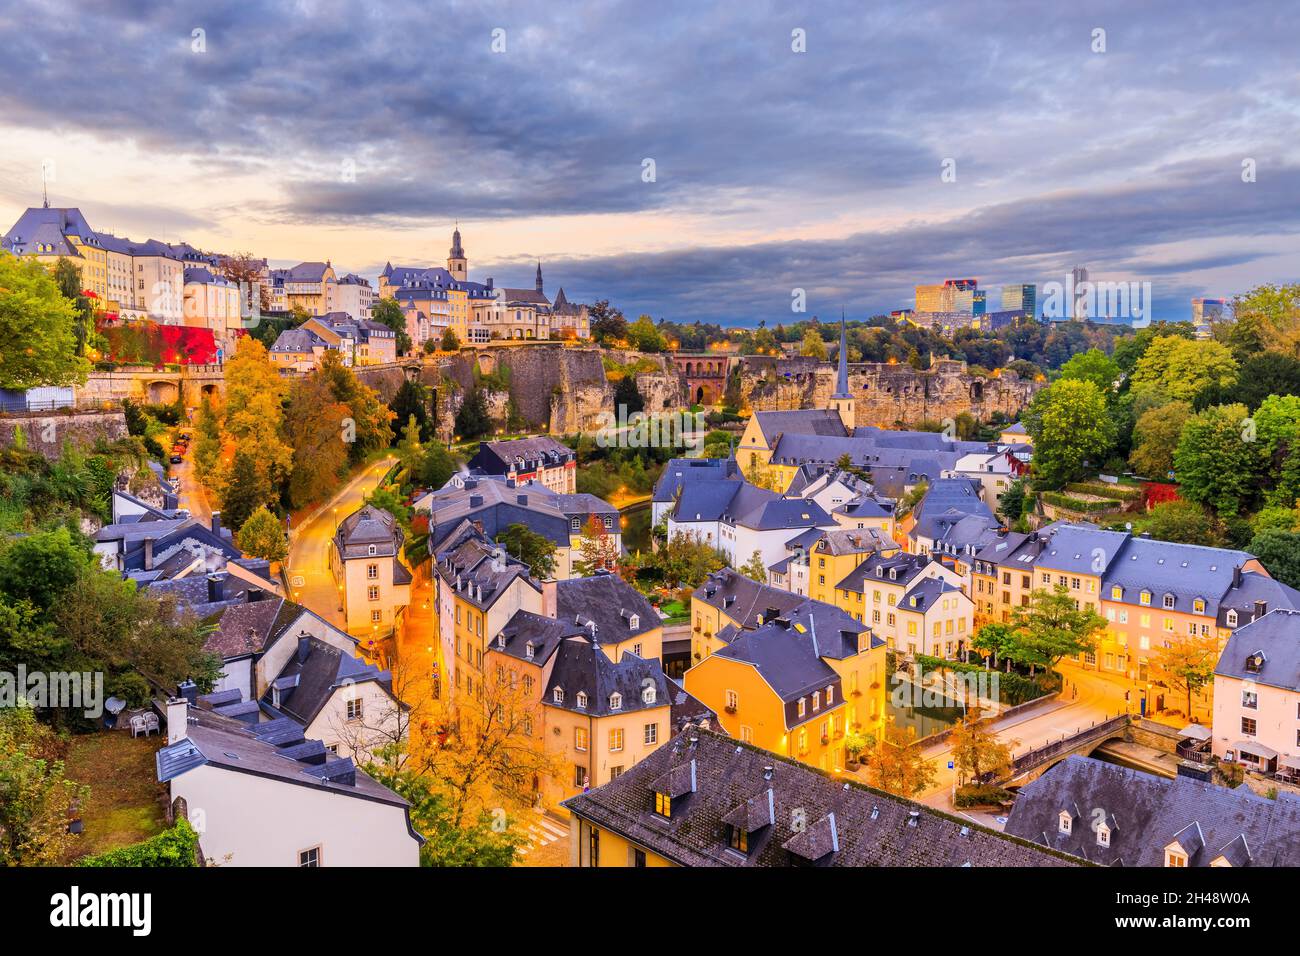 Luxemburgo, la capital del Gran Ducado de Luxemburgo. El casco antiguo y el barrio de Grund. Foto de stock